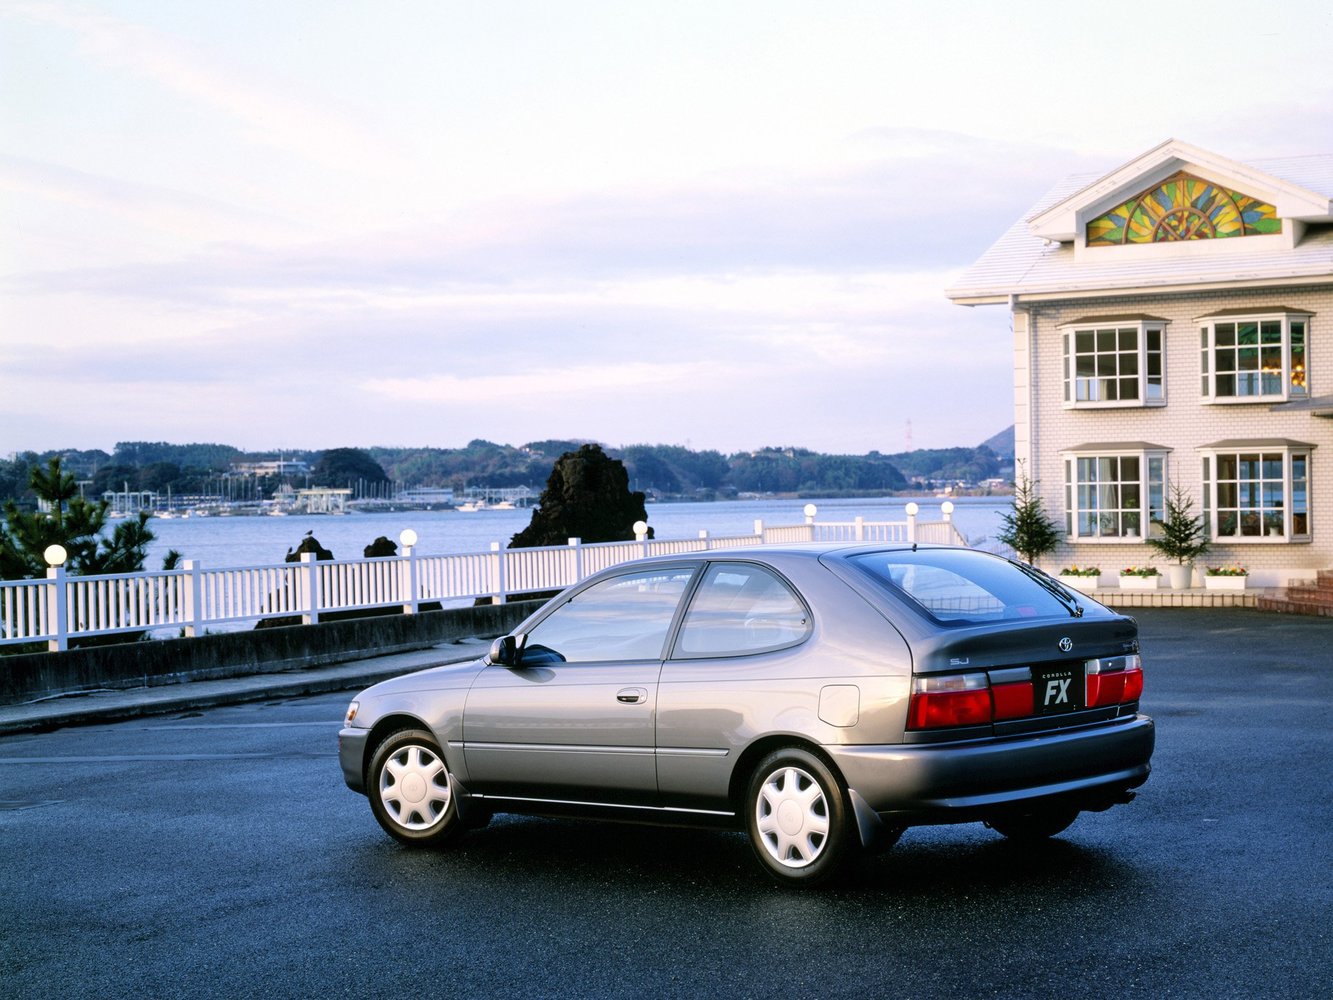 хэтчбек 3 дв. Toyota Corolla 1991 - 1997г выпуска модификация 1.3 AT (75 л.с.)